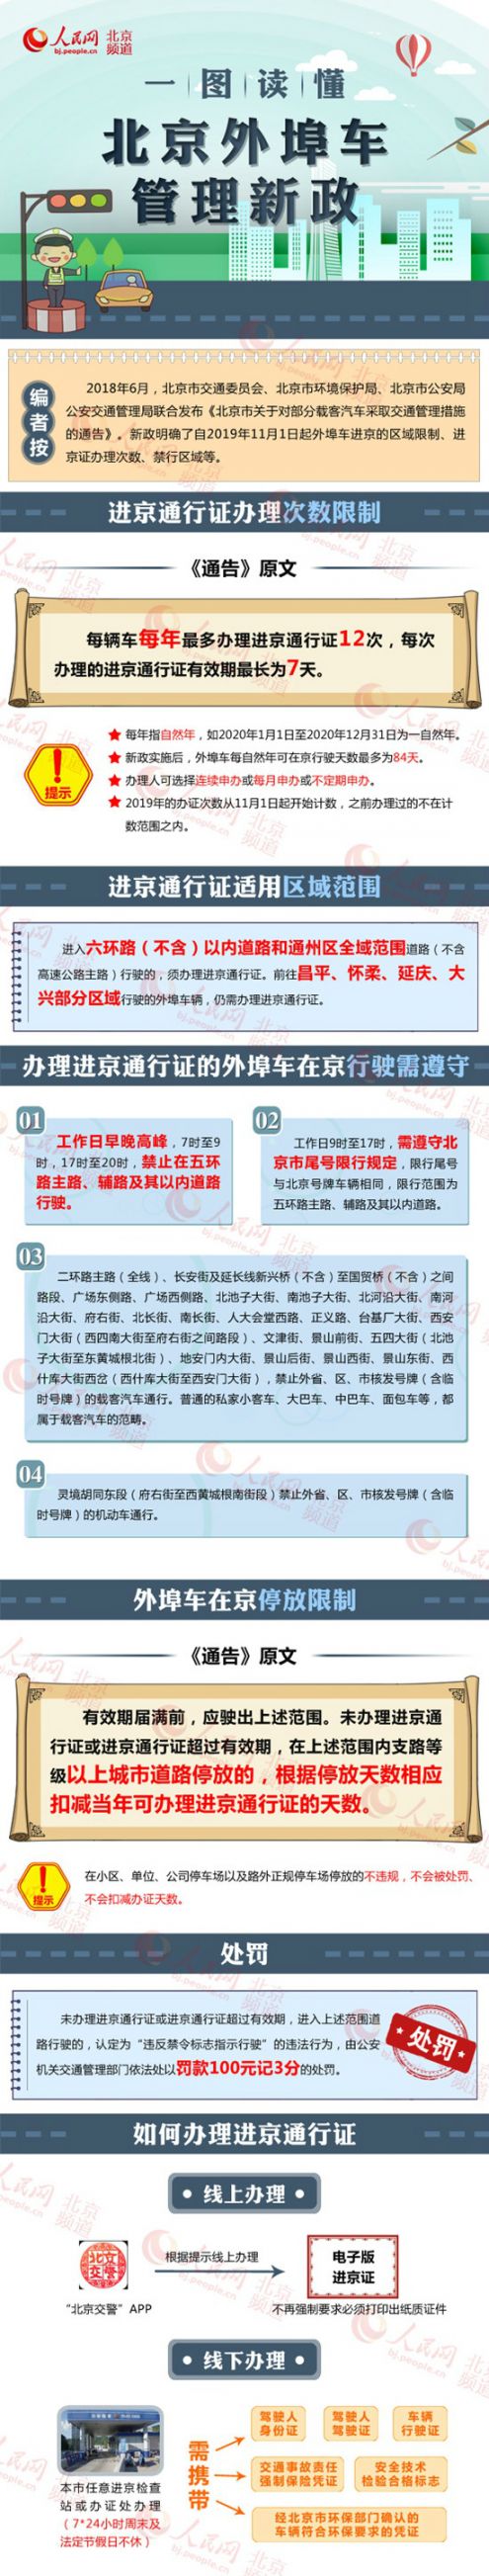 2019年11月起進京證辦理限制次數、適用區域范圍及外地車停放限制